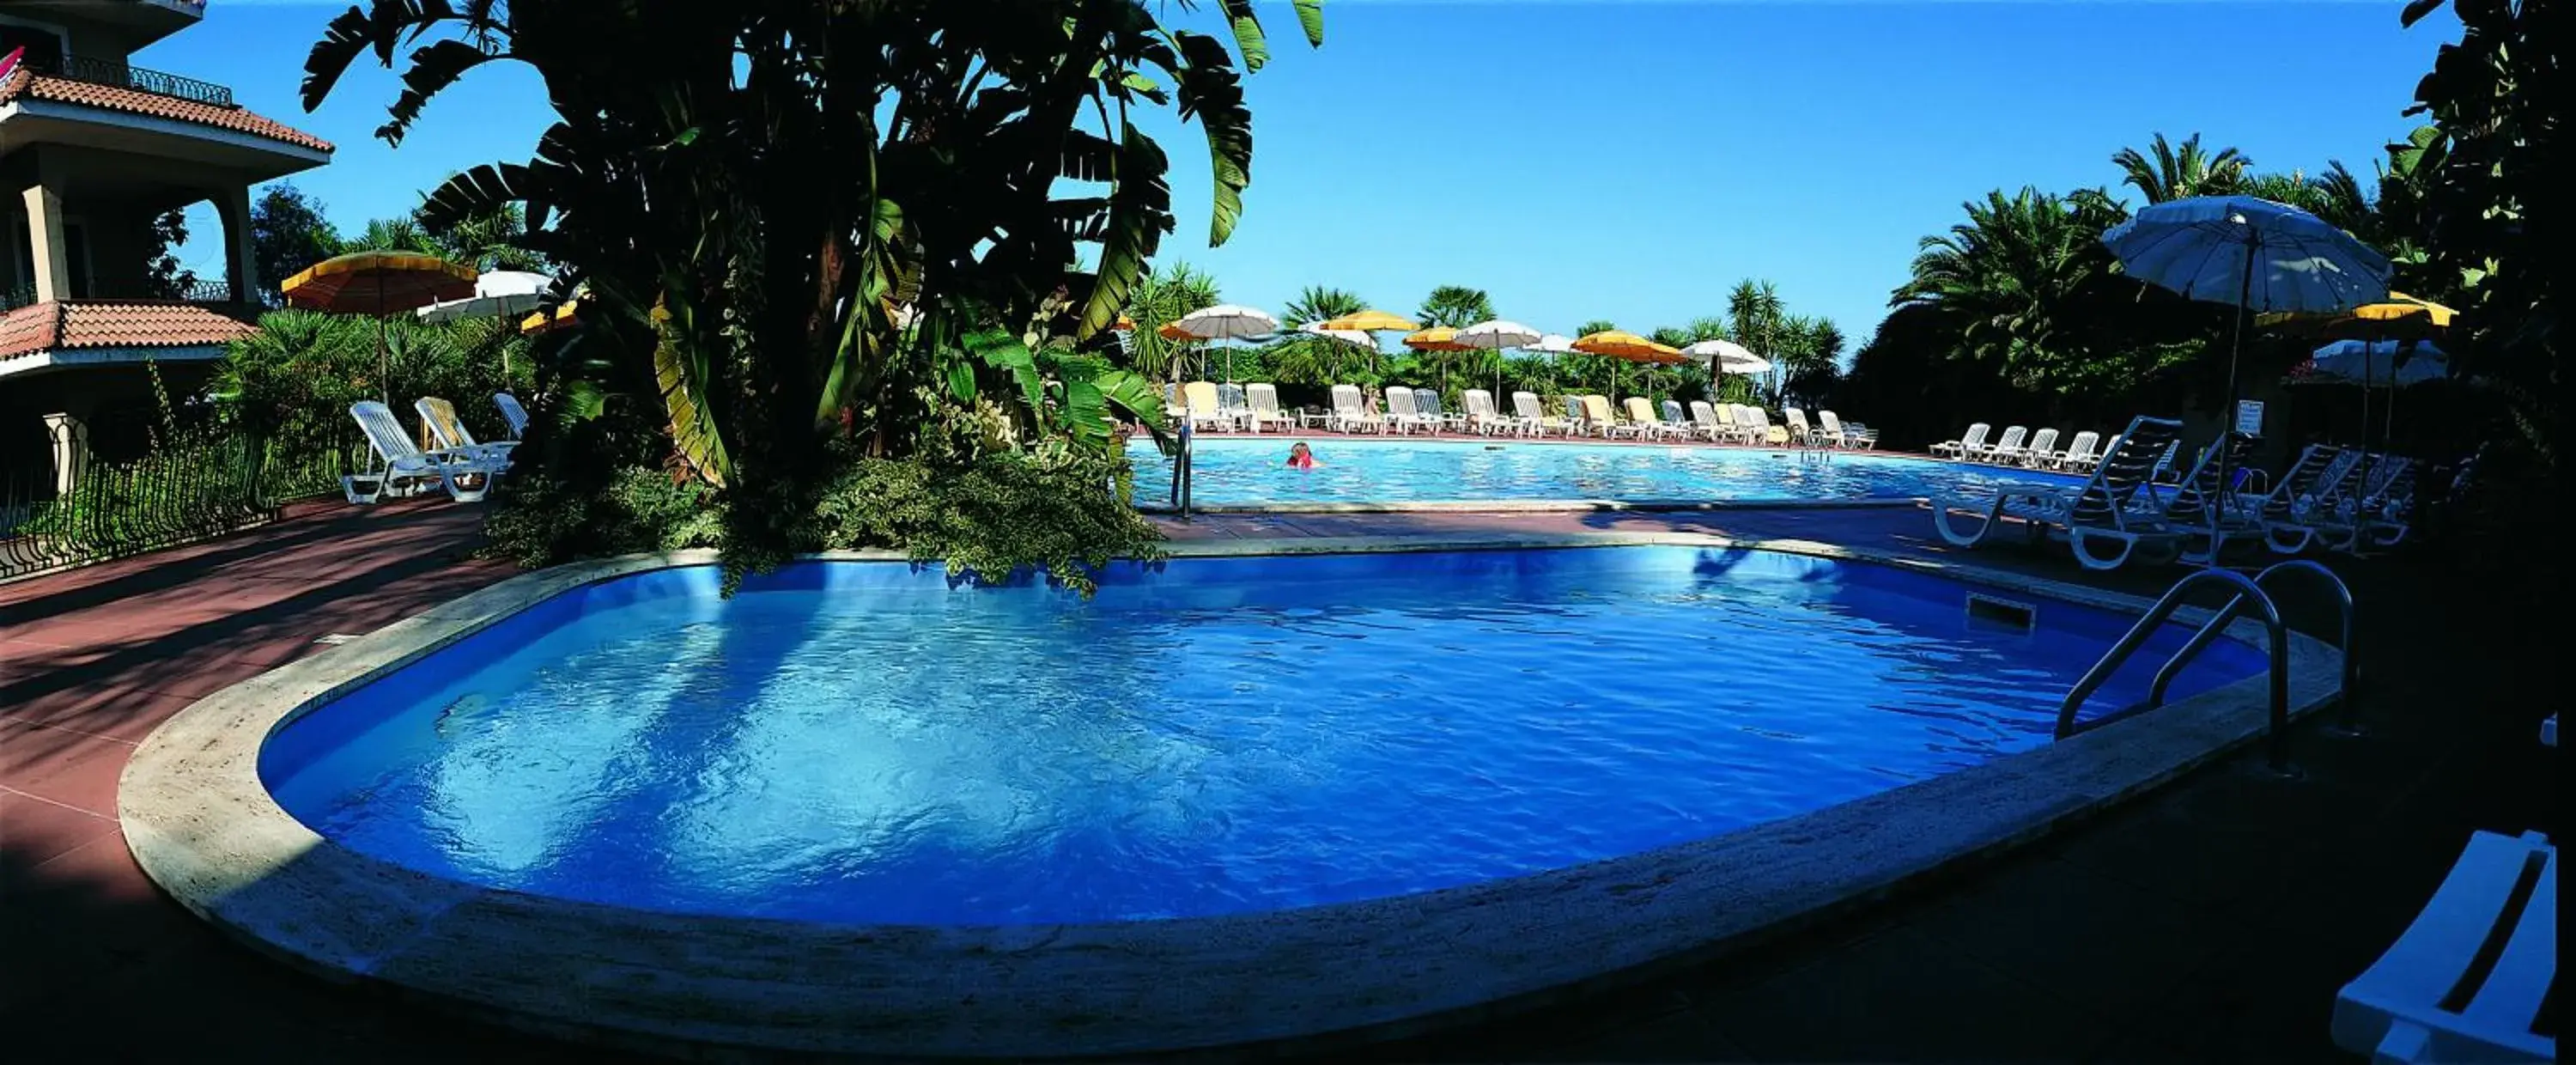 Swimming Pool in Hotel Caparena